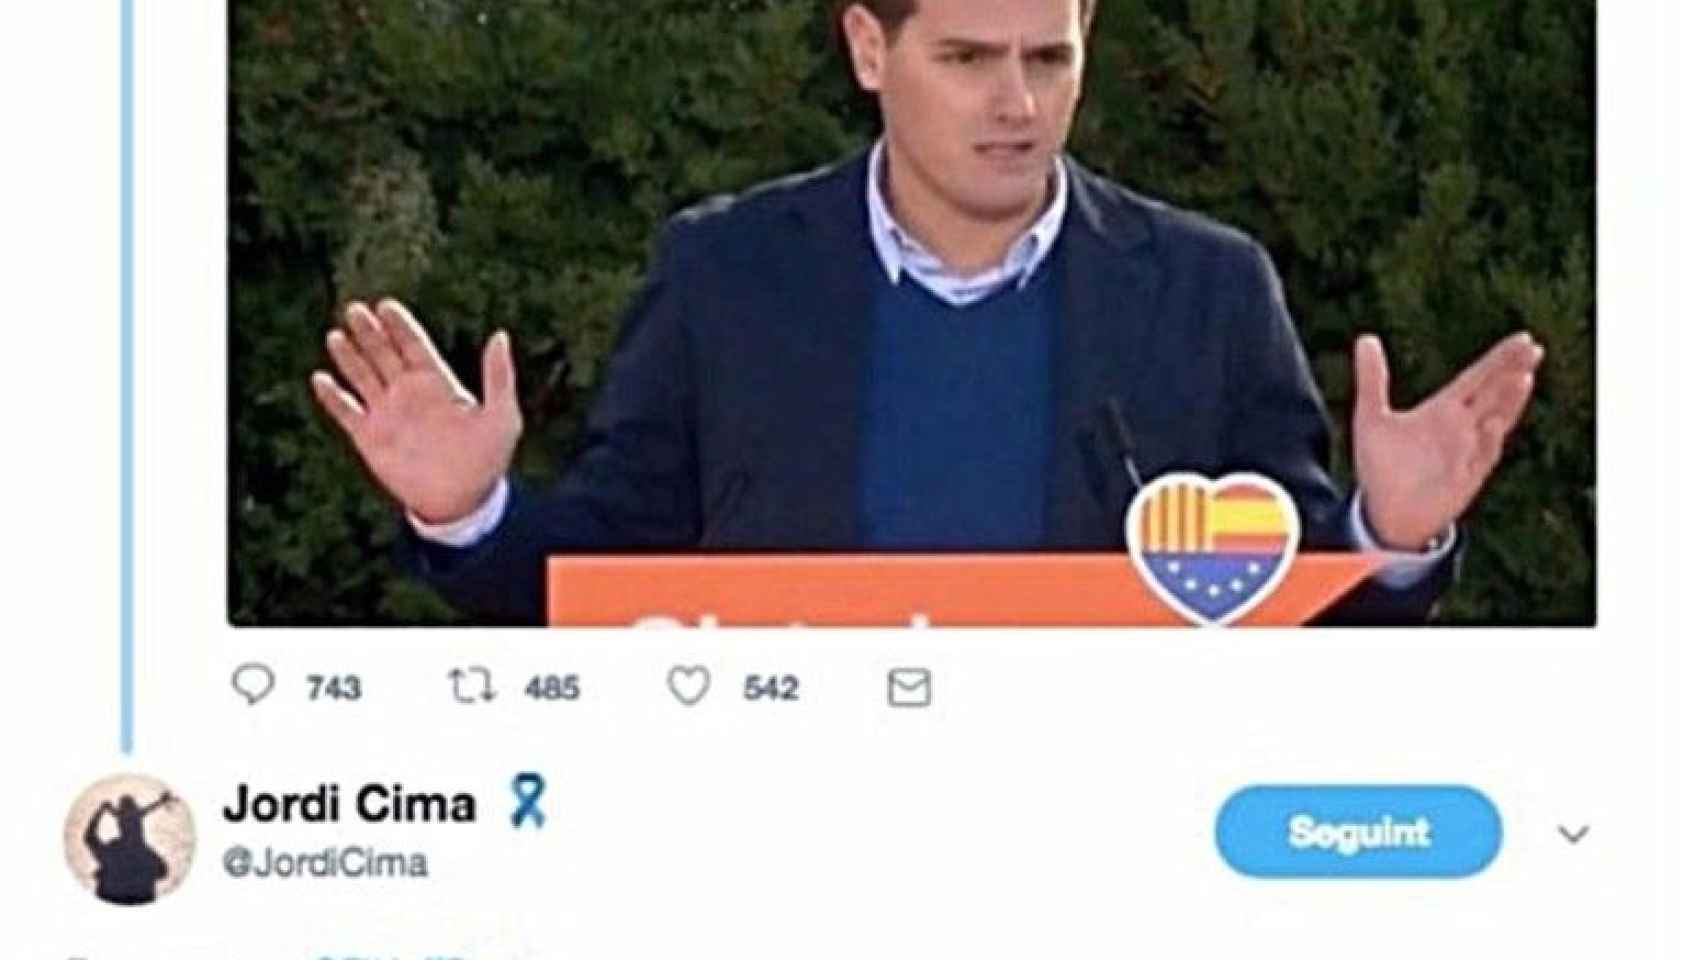 El tuit de Jordi Cima en el que insinúa que Ciudadanos son fachas como respuesta a otro comentario / TWITTER